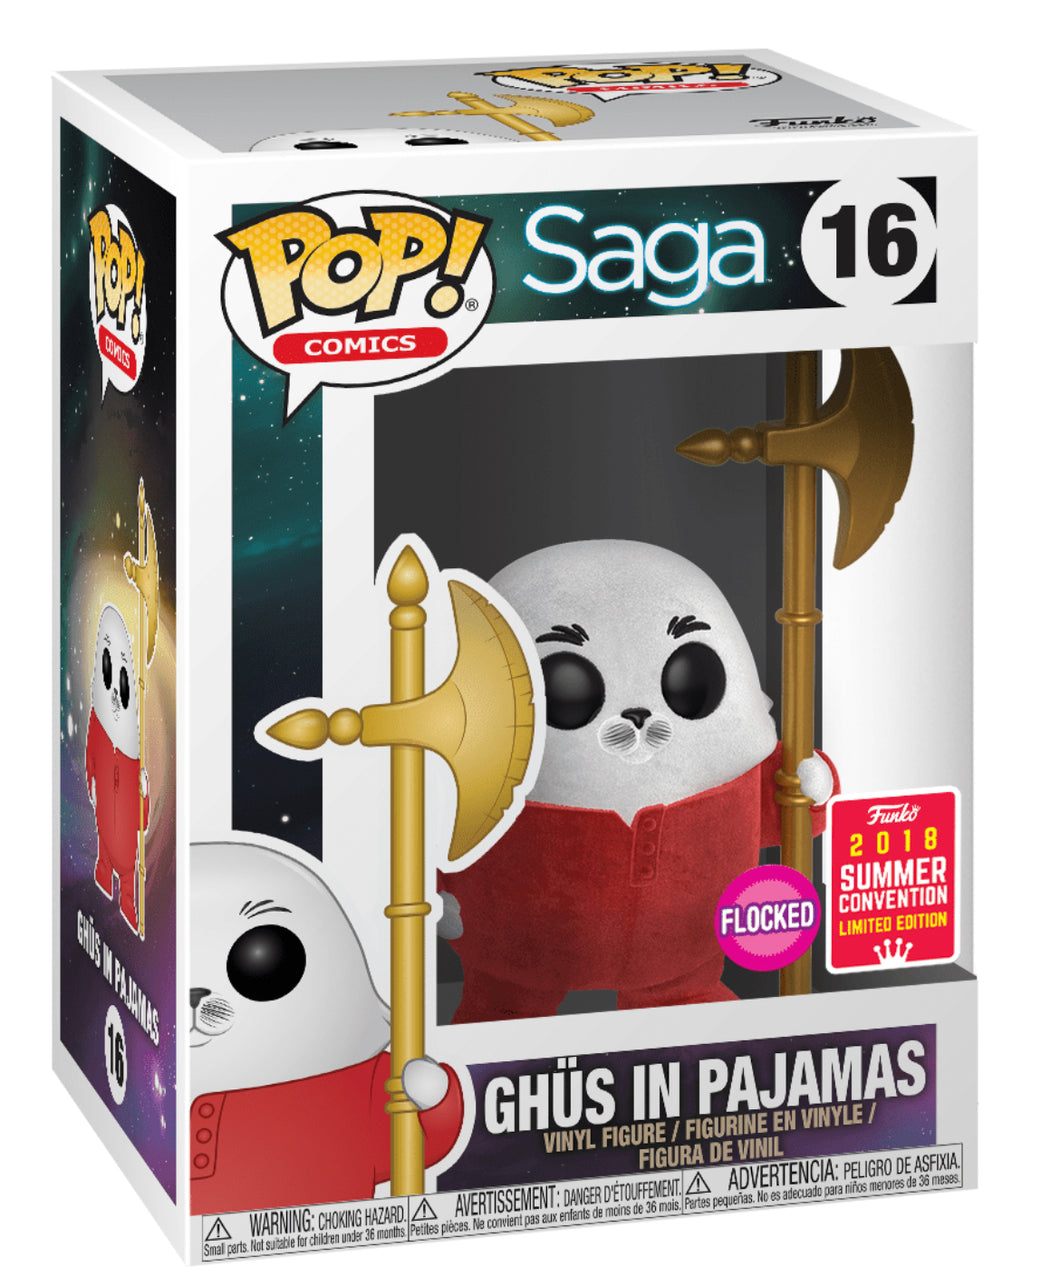 POP! Comics: 16 Saga, Ghus in Pajamas (FL) Exclusive